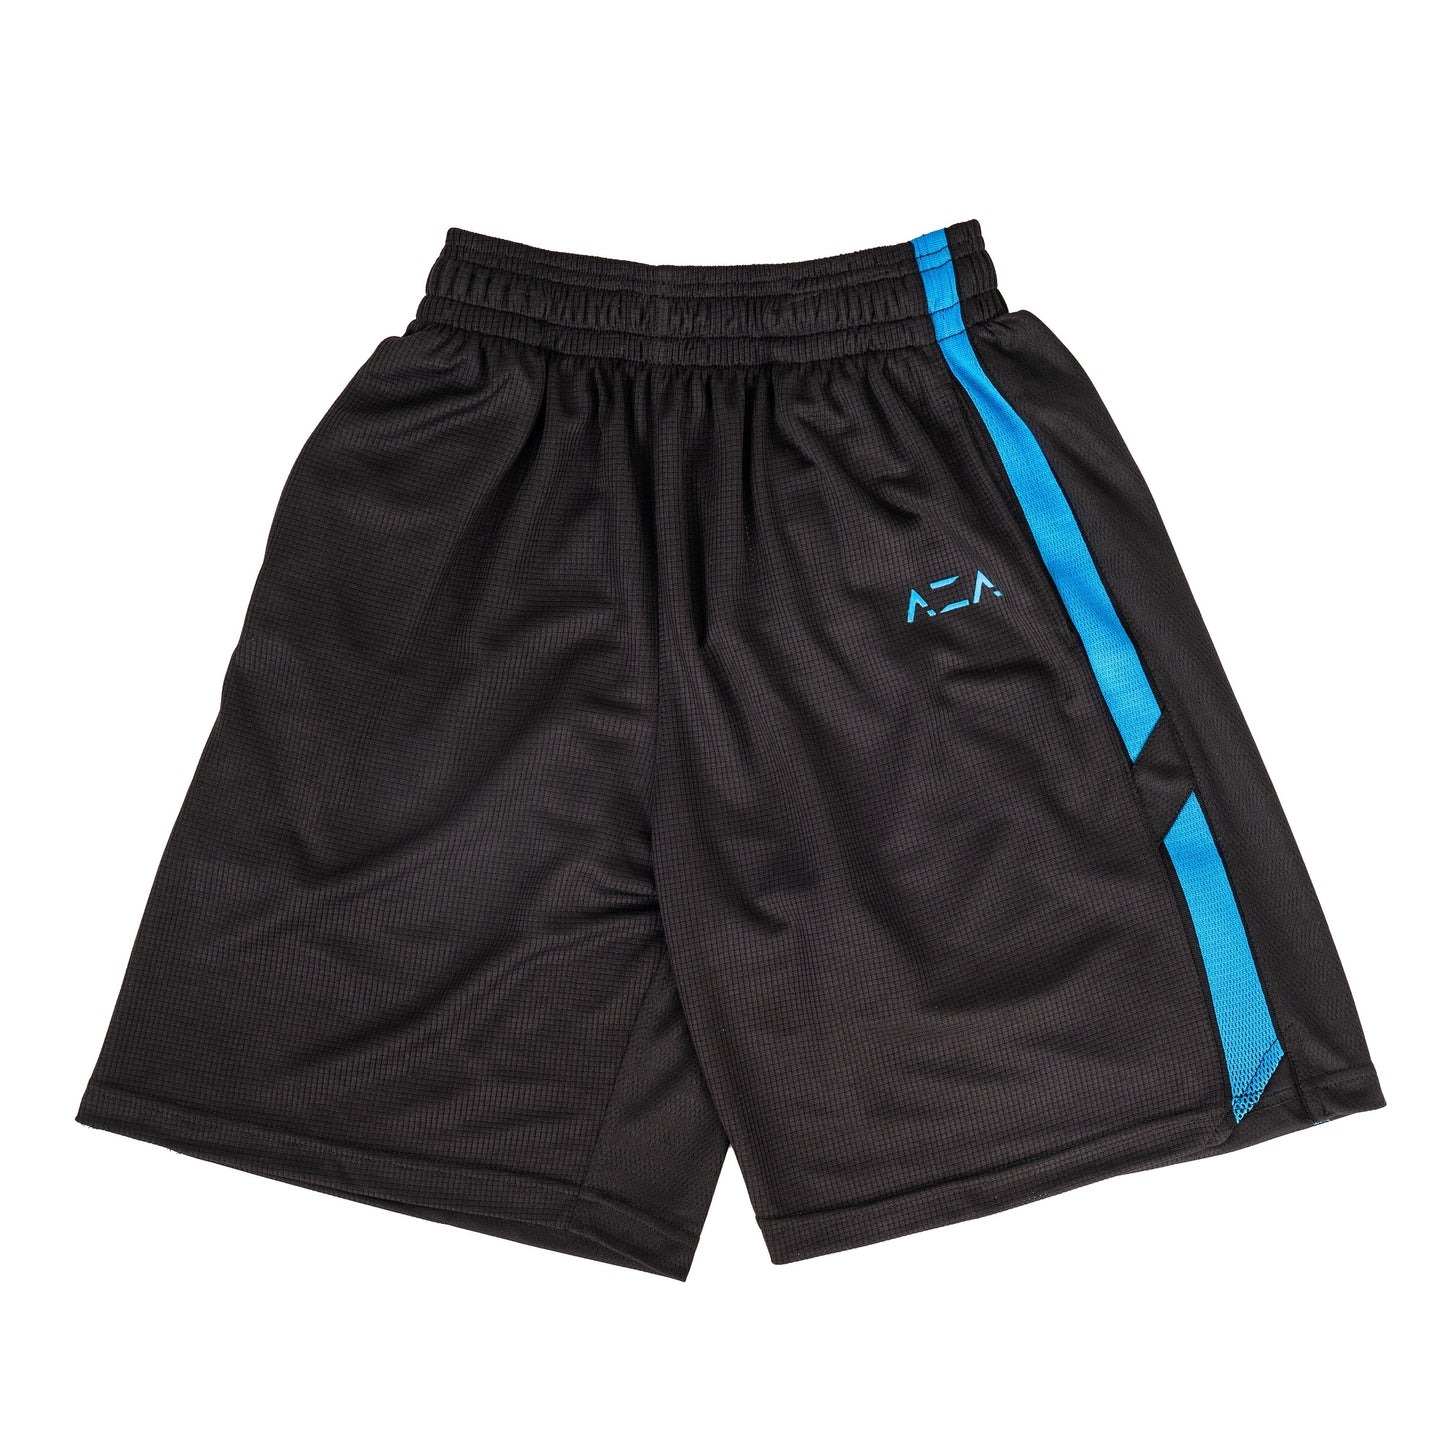 AZA Short Pants Basketball Single Color Edition - Blue